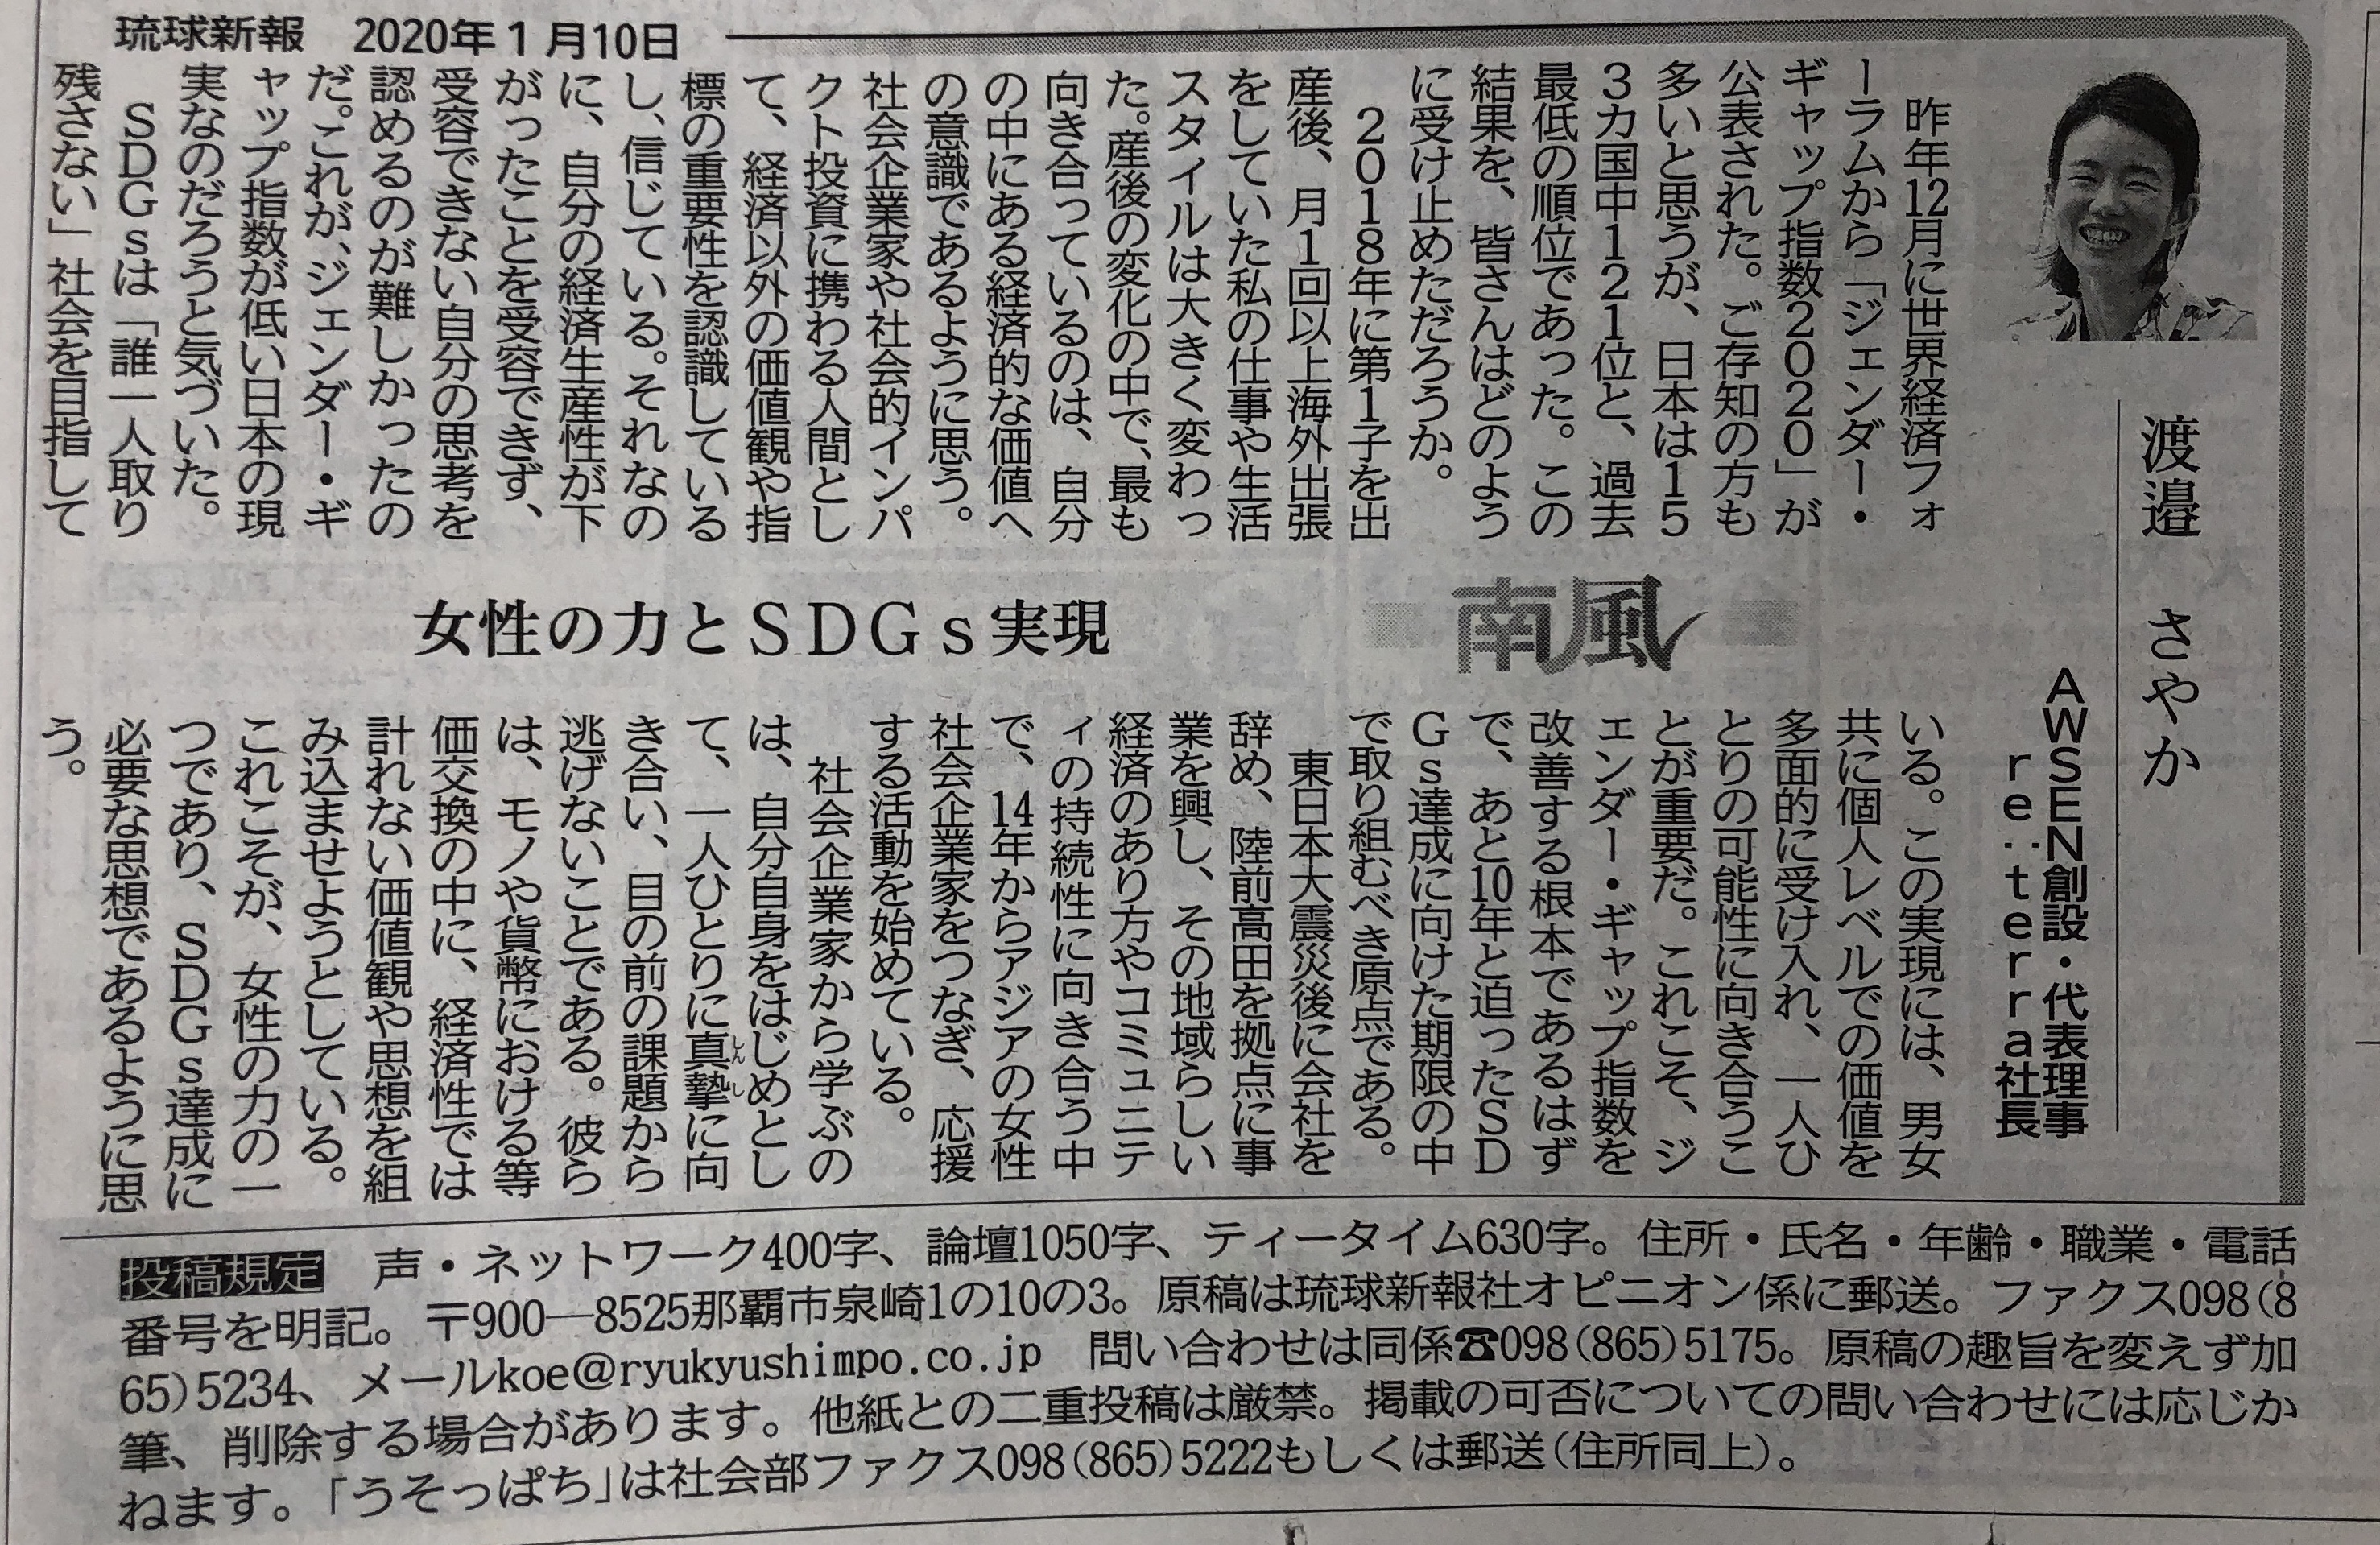 琉球新報「南風」コラム "女性の力とSDGs実現"